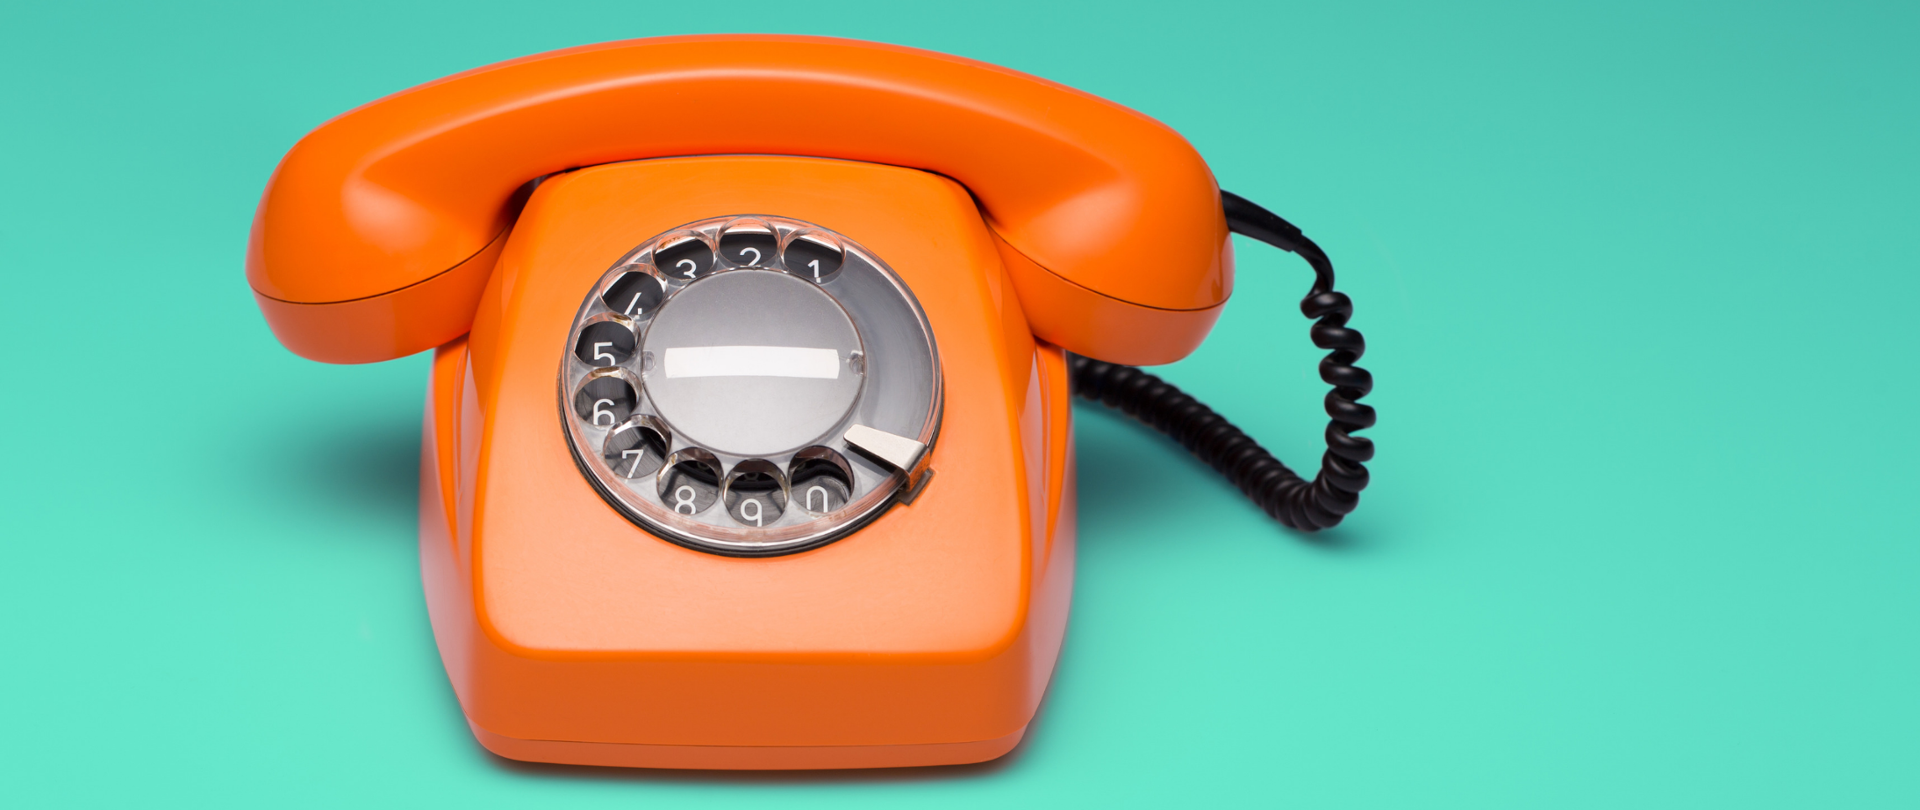 Stary pomarańczowy telefon z tarczą numerową, zielone tło